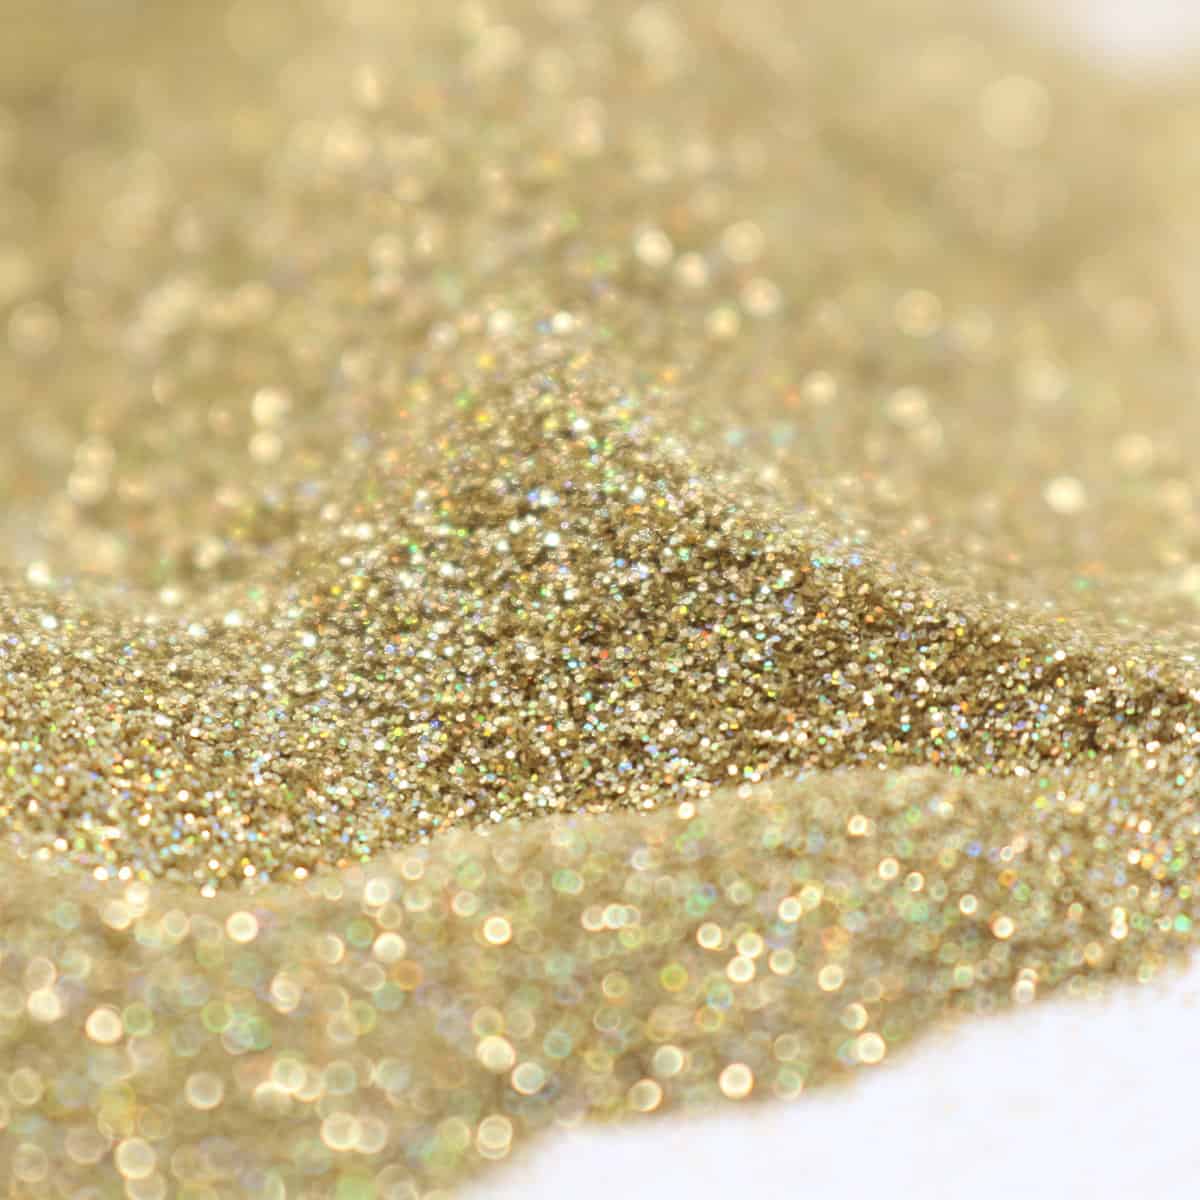 Fine gold glitter